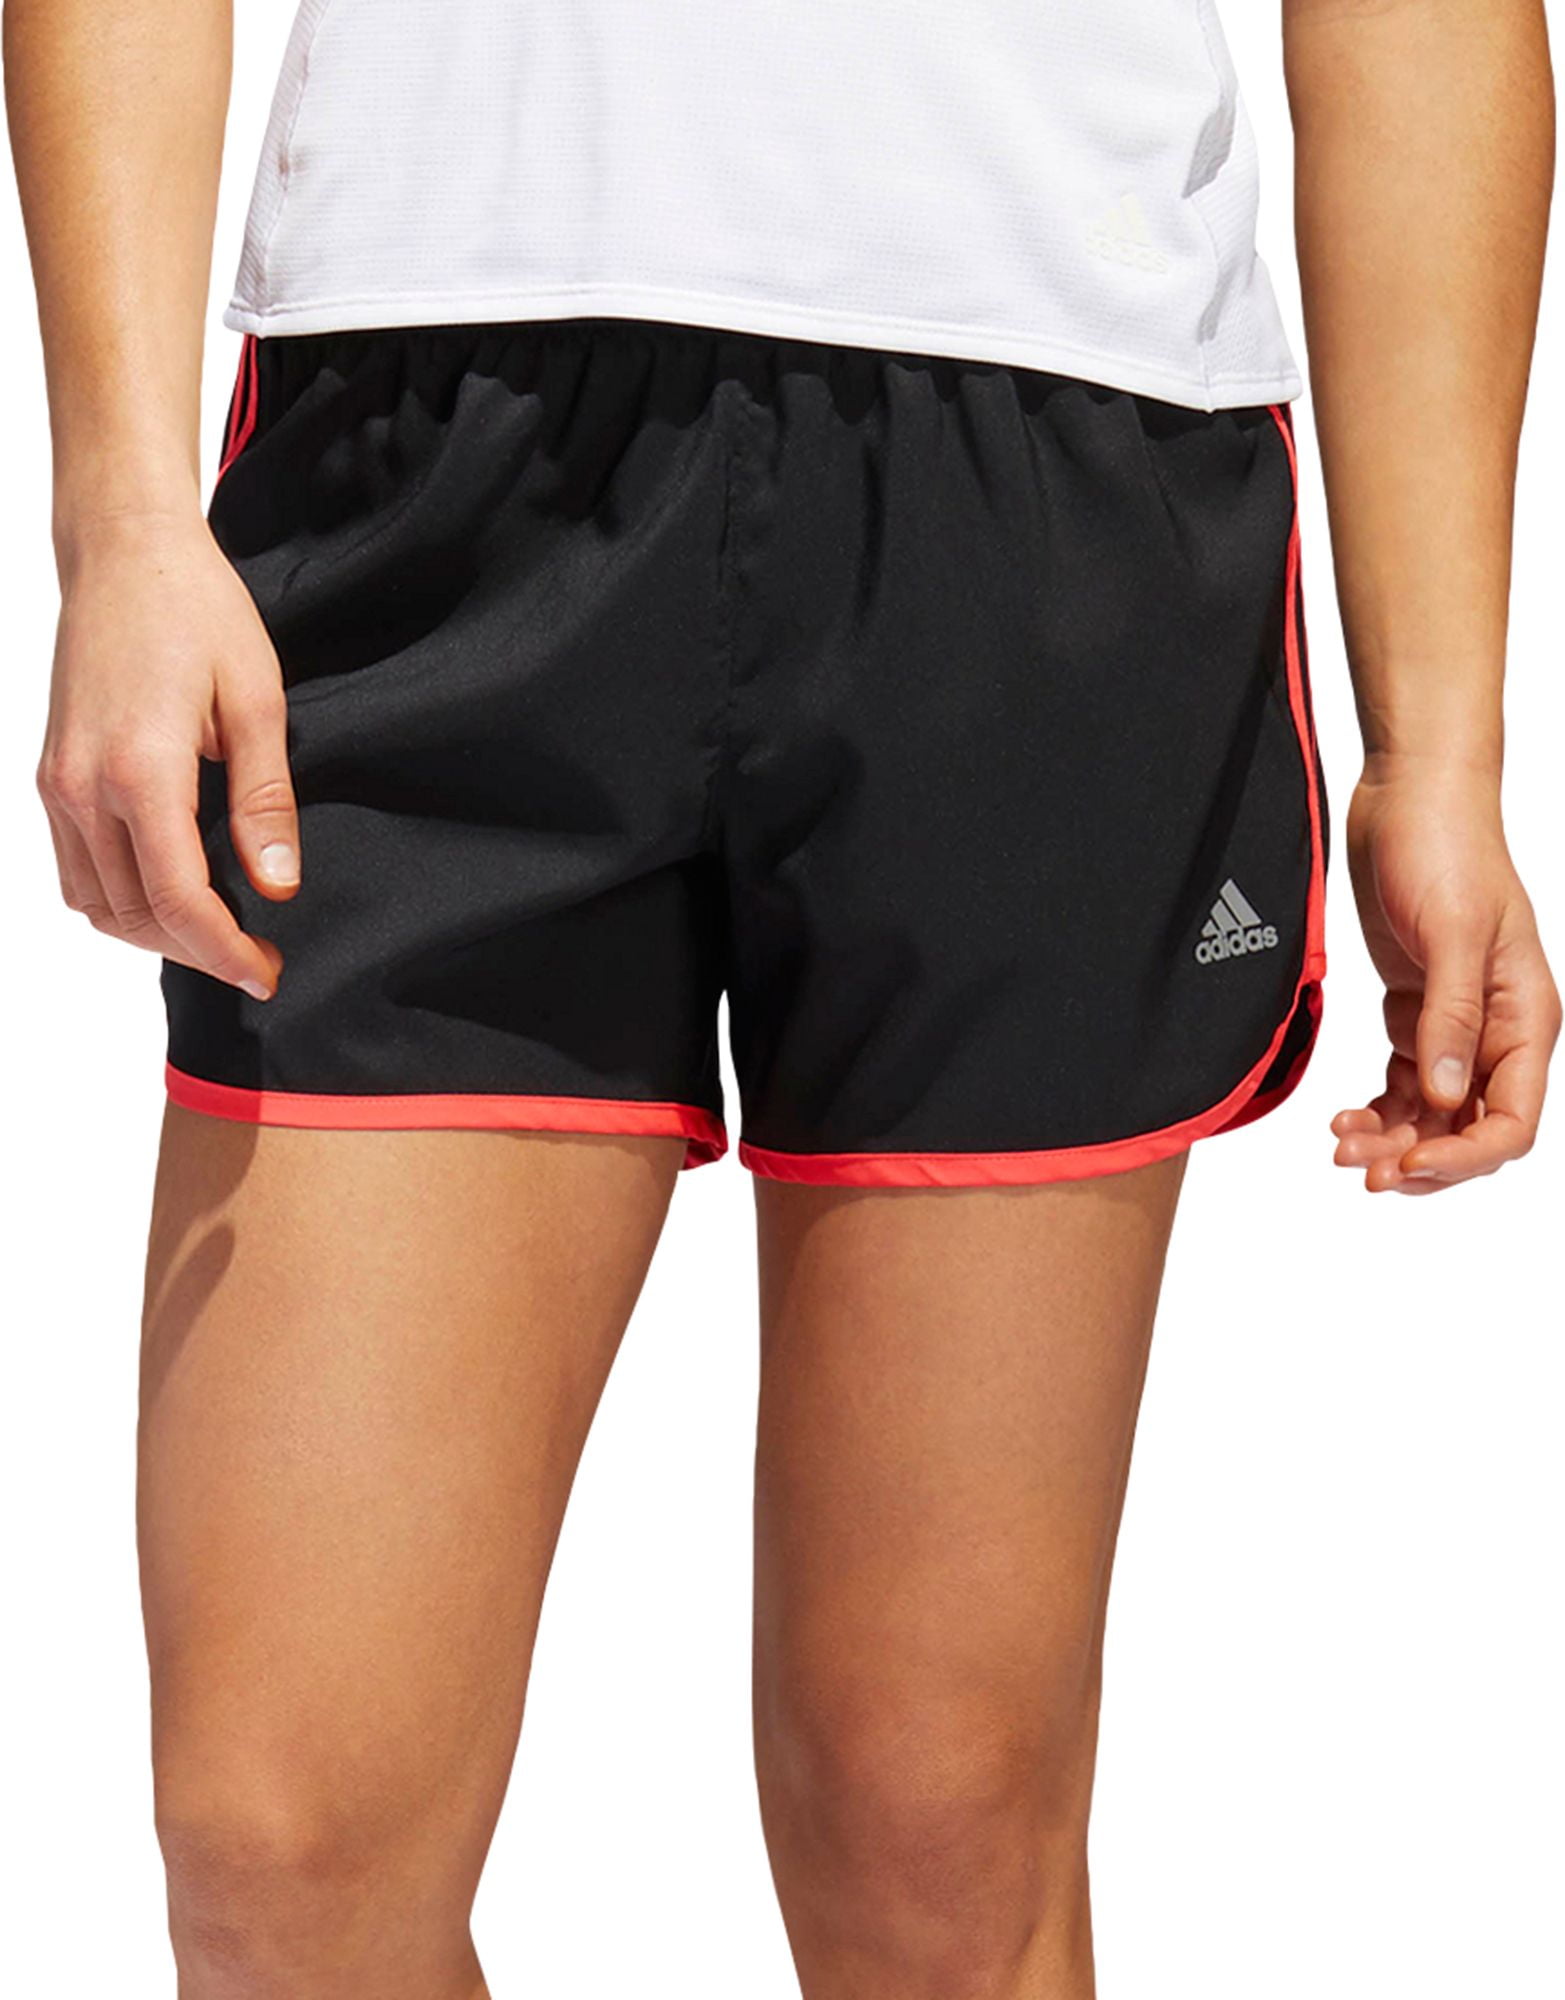 adidas marathon 20 running shorts